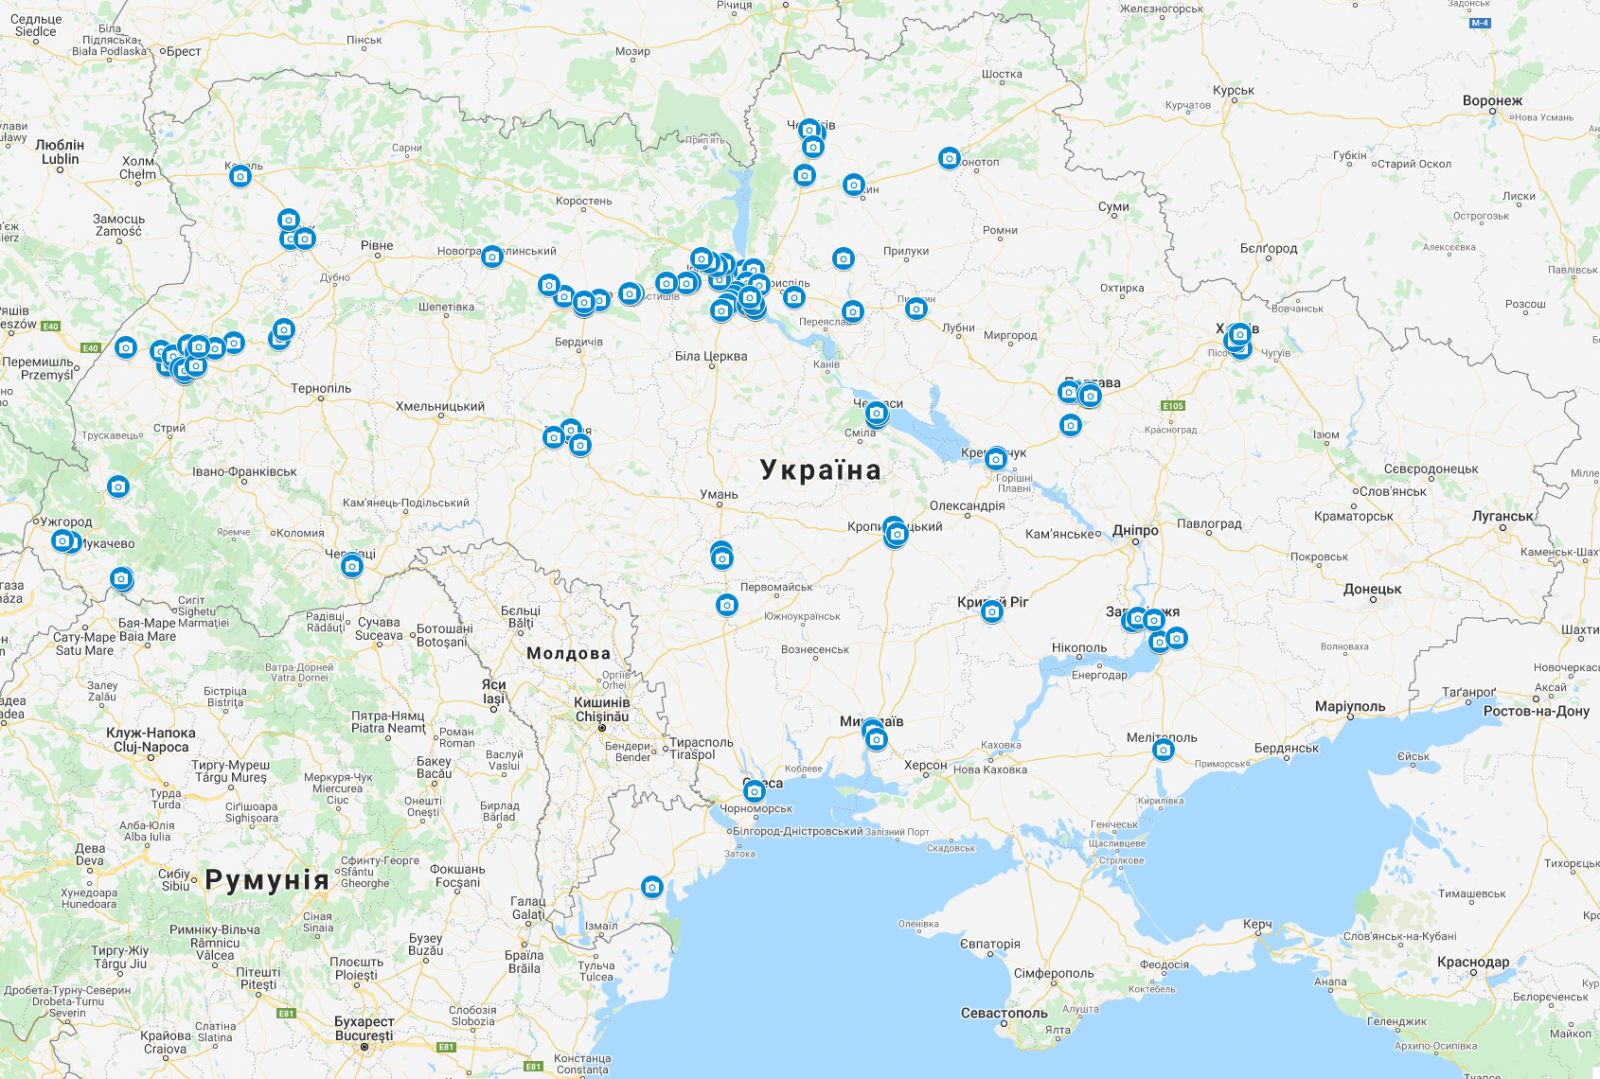 Камеры фиксации ПДД в Украине. Карта: МВД